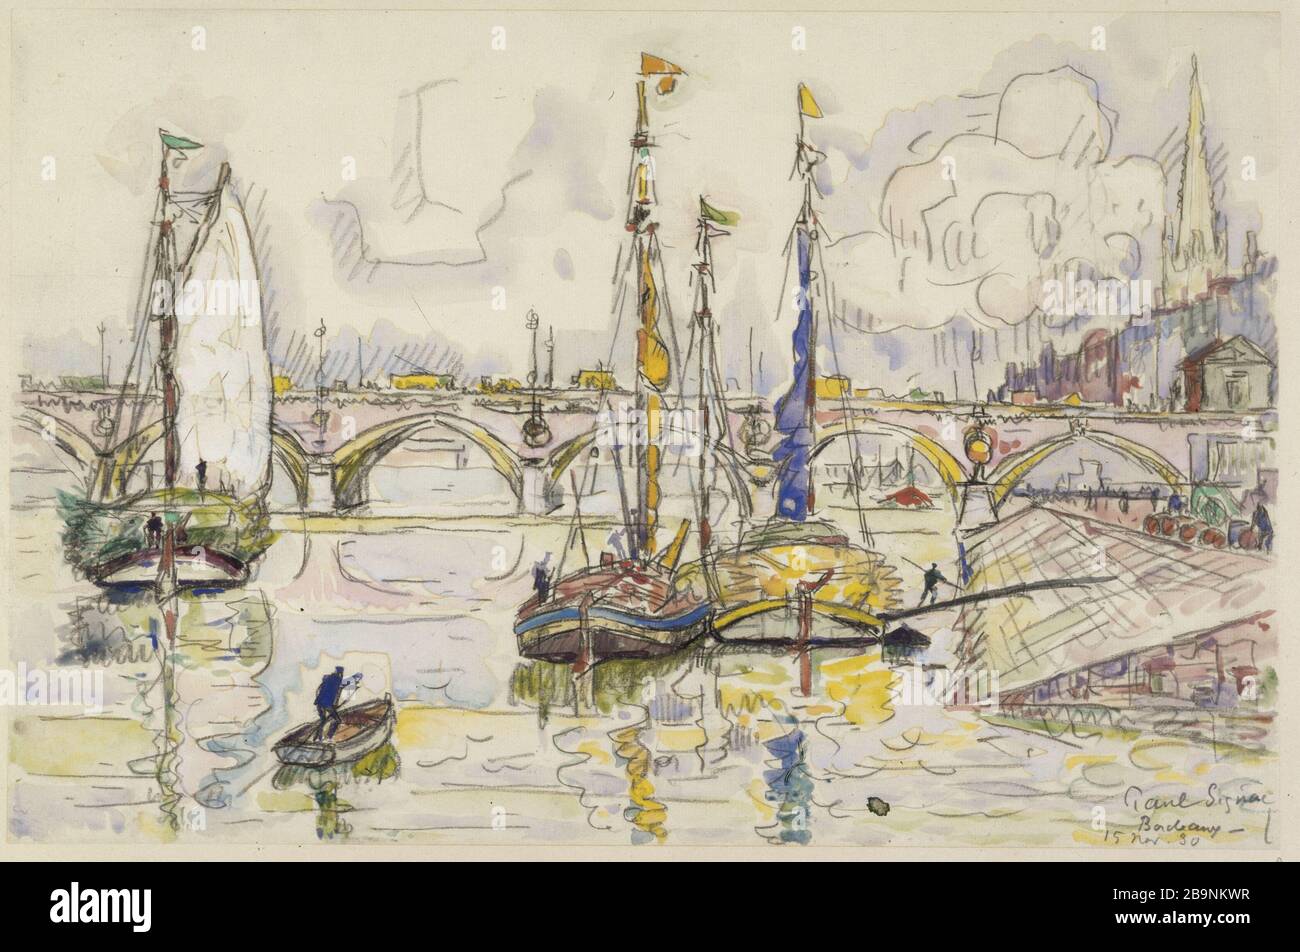 The port of Bordeaux Paul Signac (1863-1935). "Le port de Bordeaux". Aquarelle sur papier, 1930. Musée des Beaux-Arts de la Ville de Paris, Petit Palais. Stock Photo